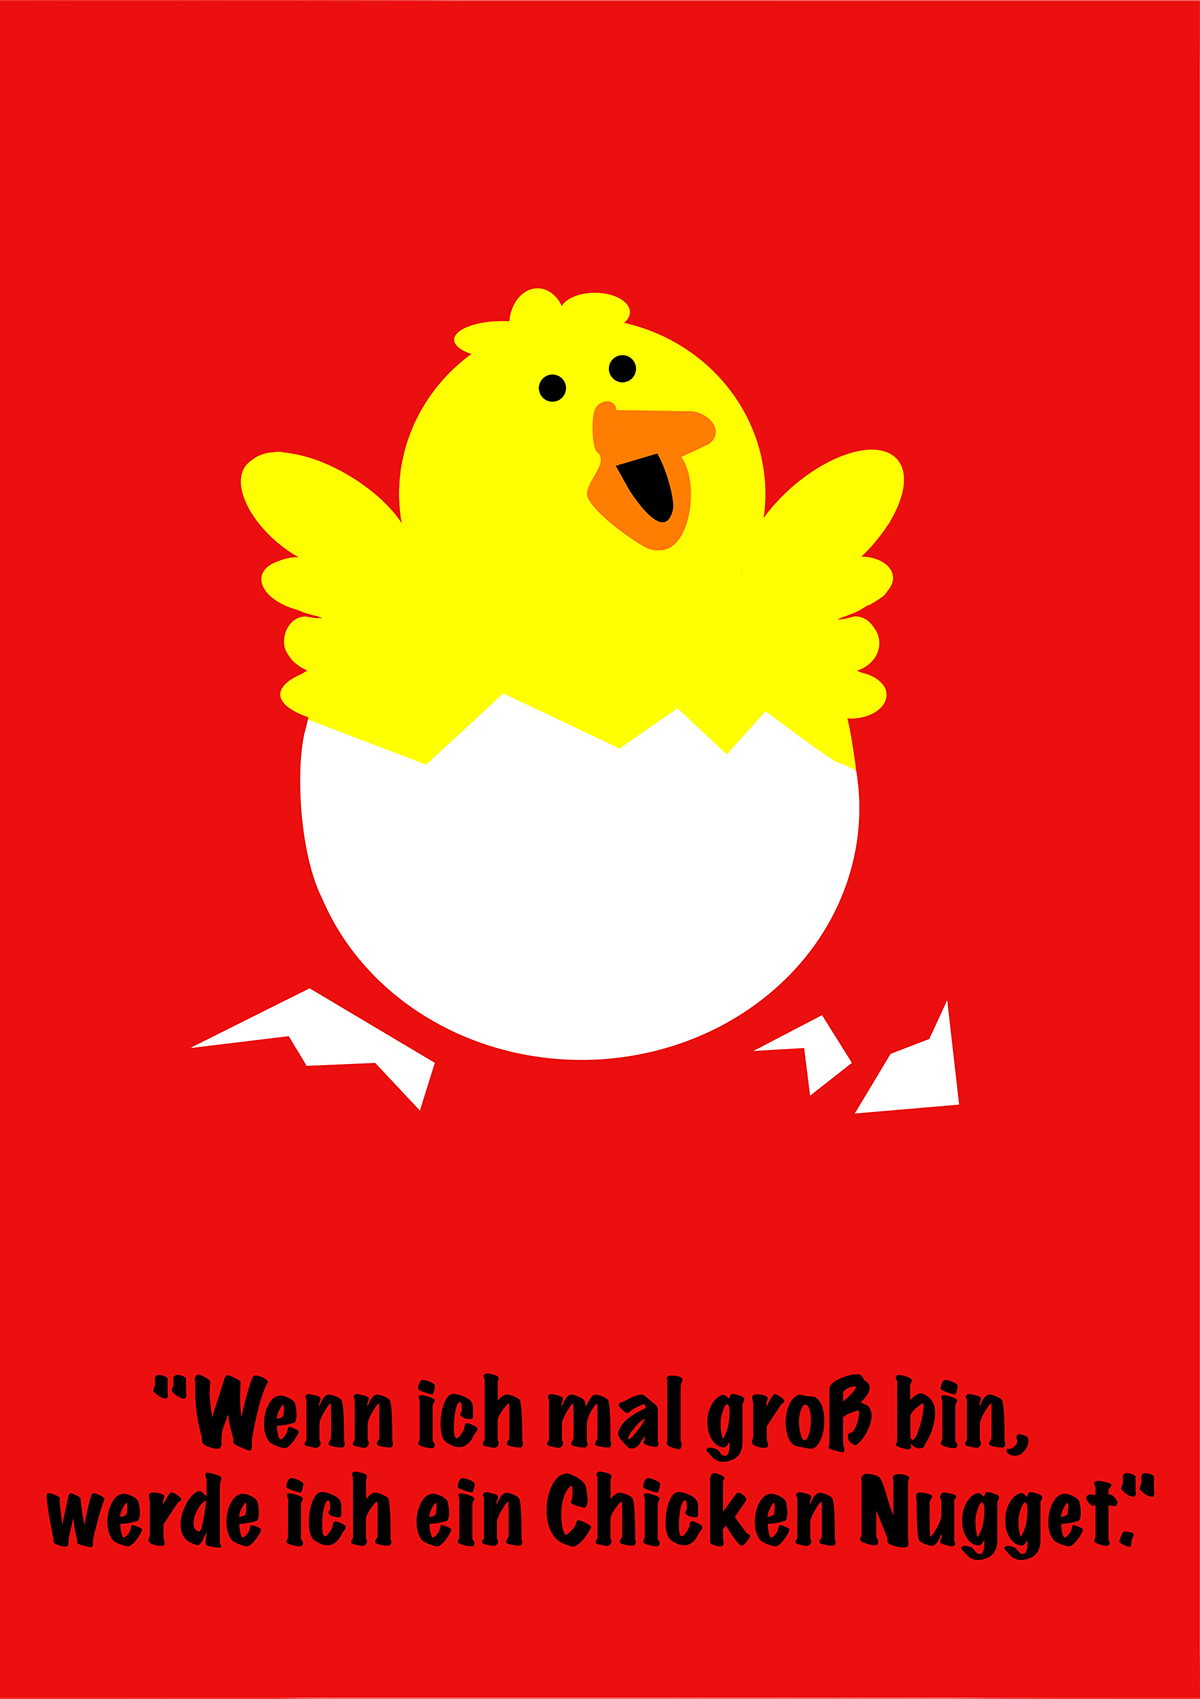 mutzurwut mutzurwut2014 chicken chickennugget fastfood protest Competition albertschweitzerstiftung minimalistic poster